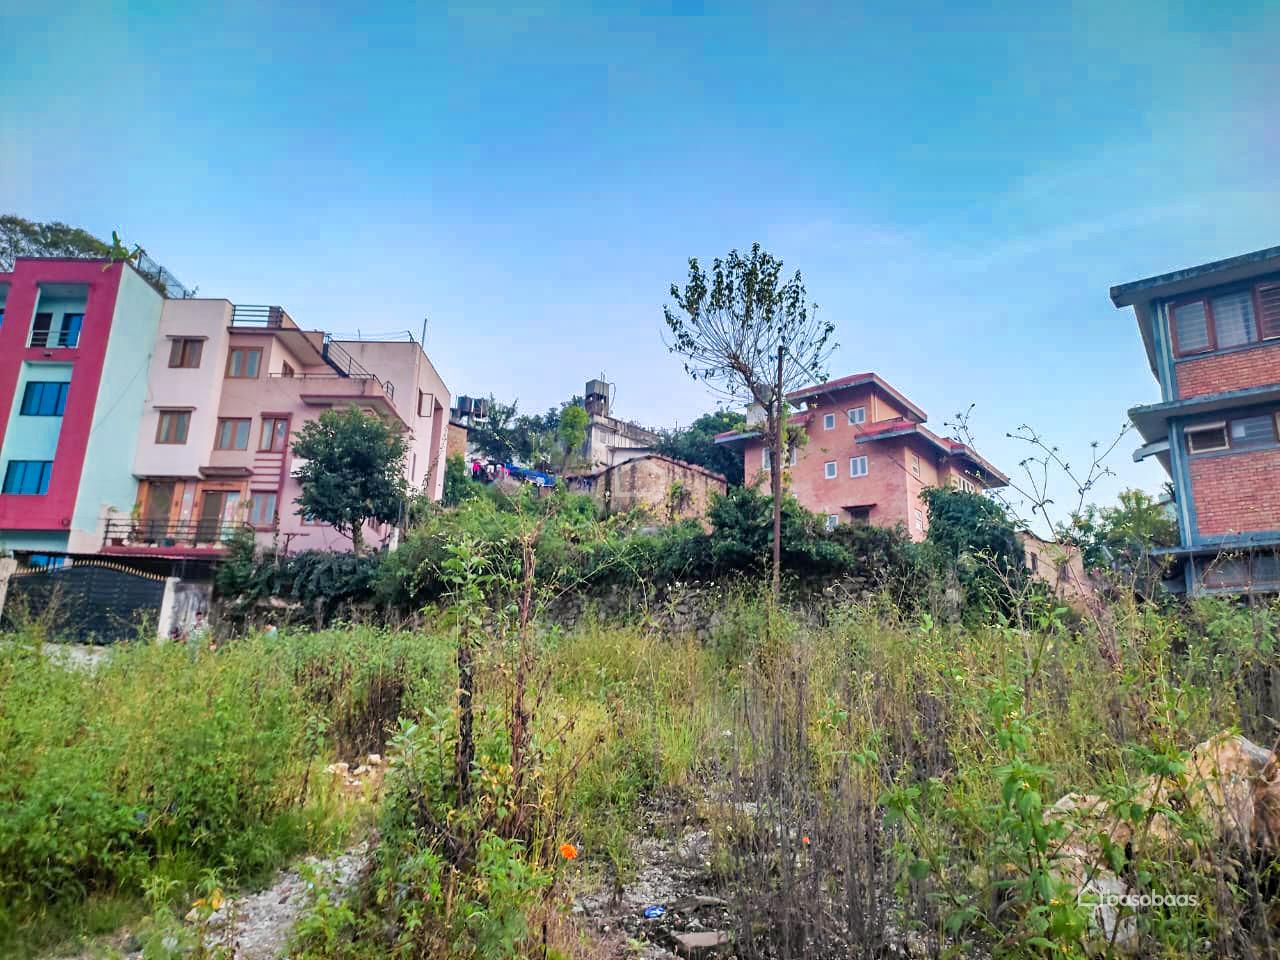 Residental Land : Land for Sale in Bansbari, Kathmandu Image 2